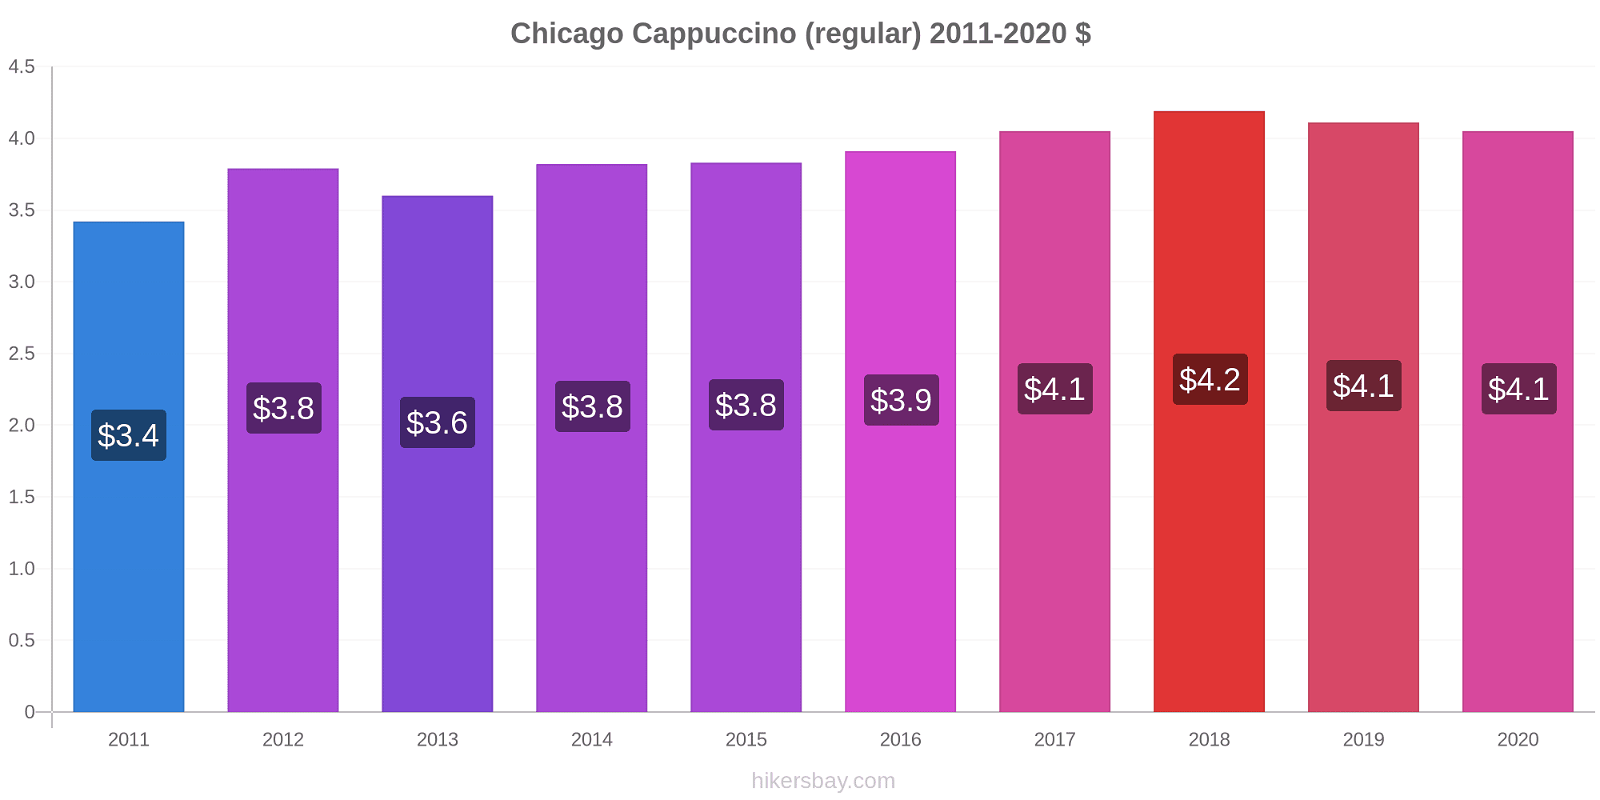 Chicago price changes Cappuccino (regular) hikersbay.com